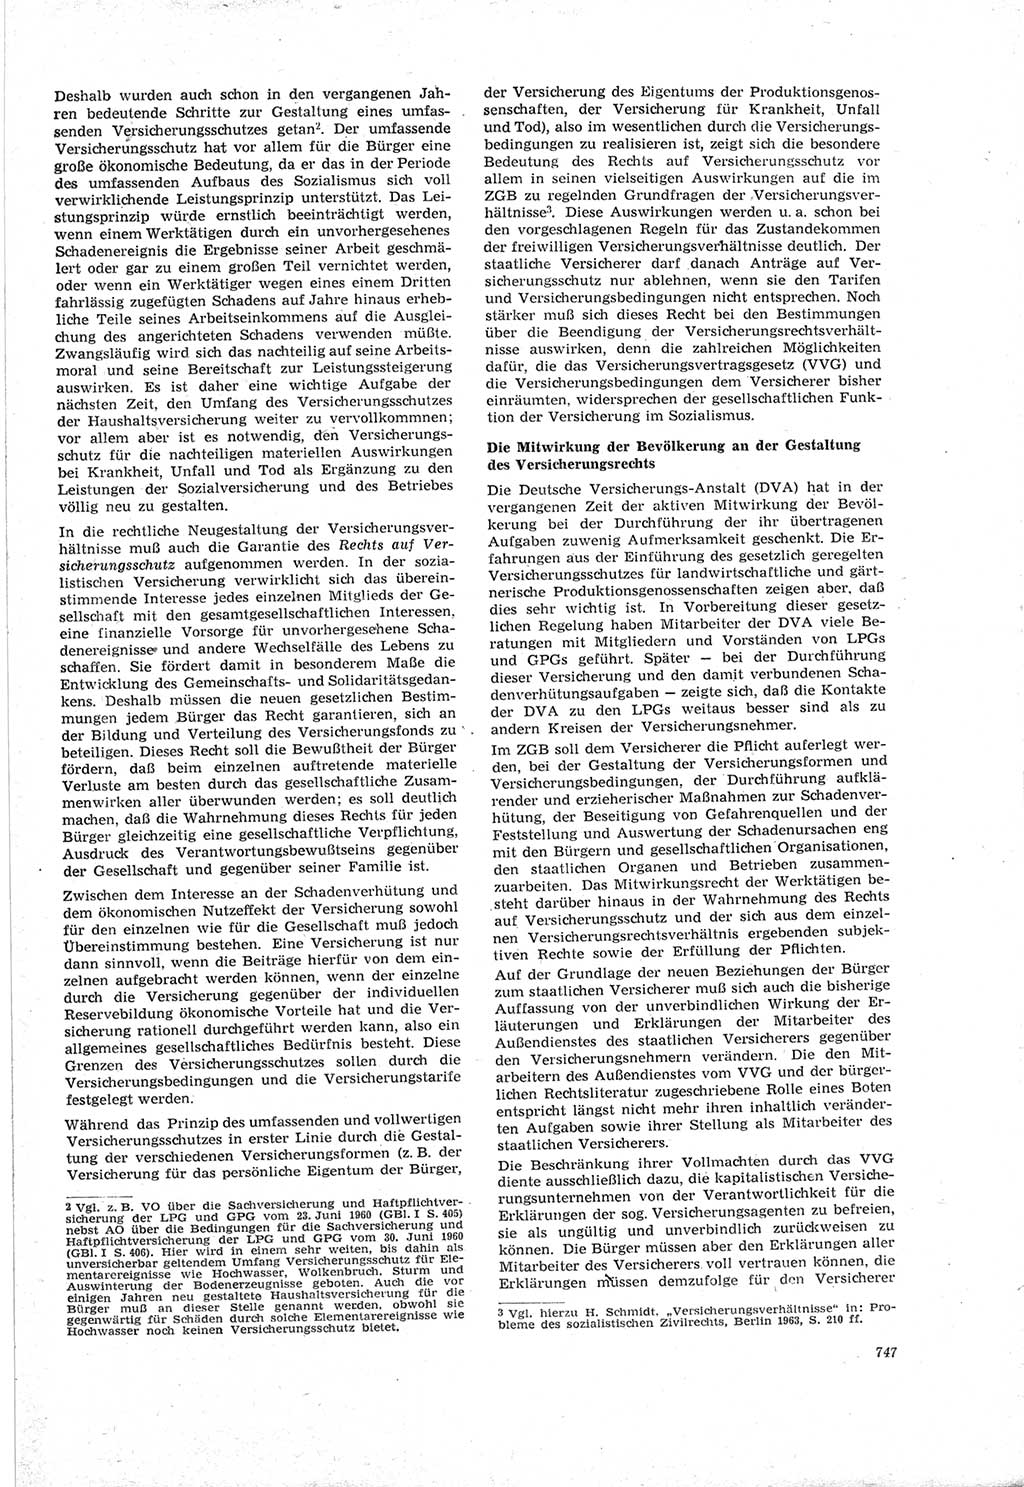 Neue Justiz (NJ), Zeitschrift für Recht und Rechtswissenschaft [Deutsche Demokratische Republik (DDR)], 18. Jahrgang 1964, Seite 747 (NJ DDR 1964, S. 747)